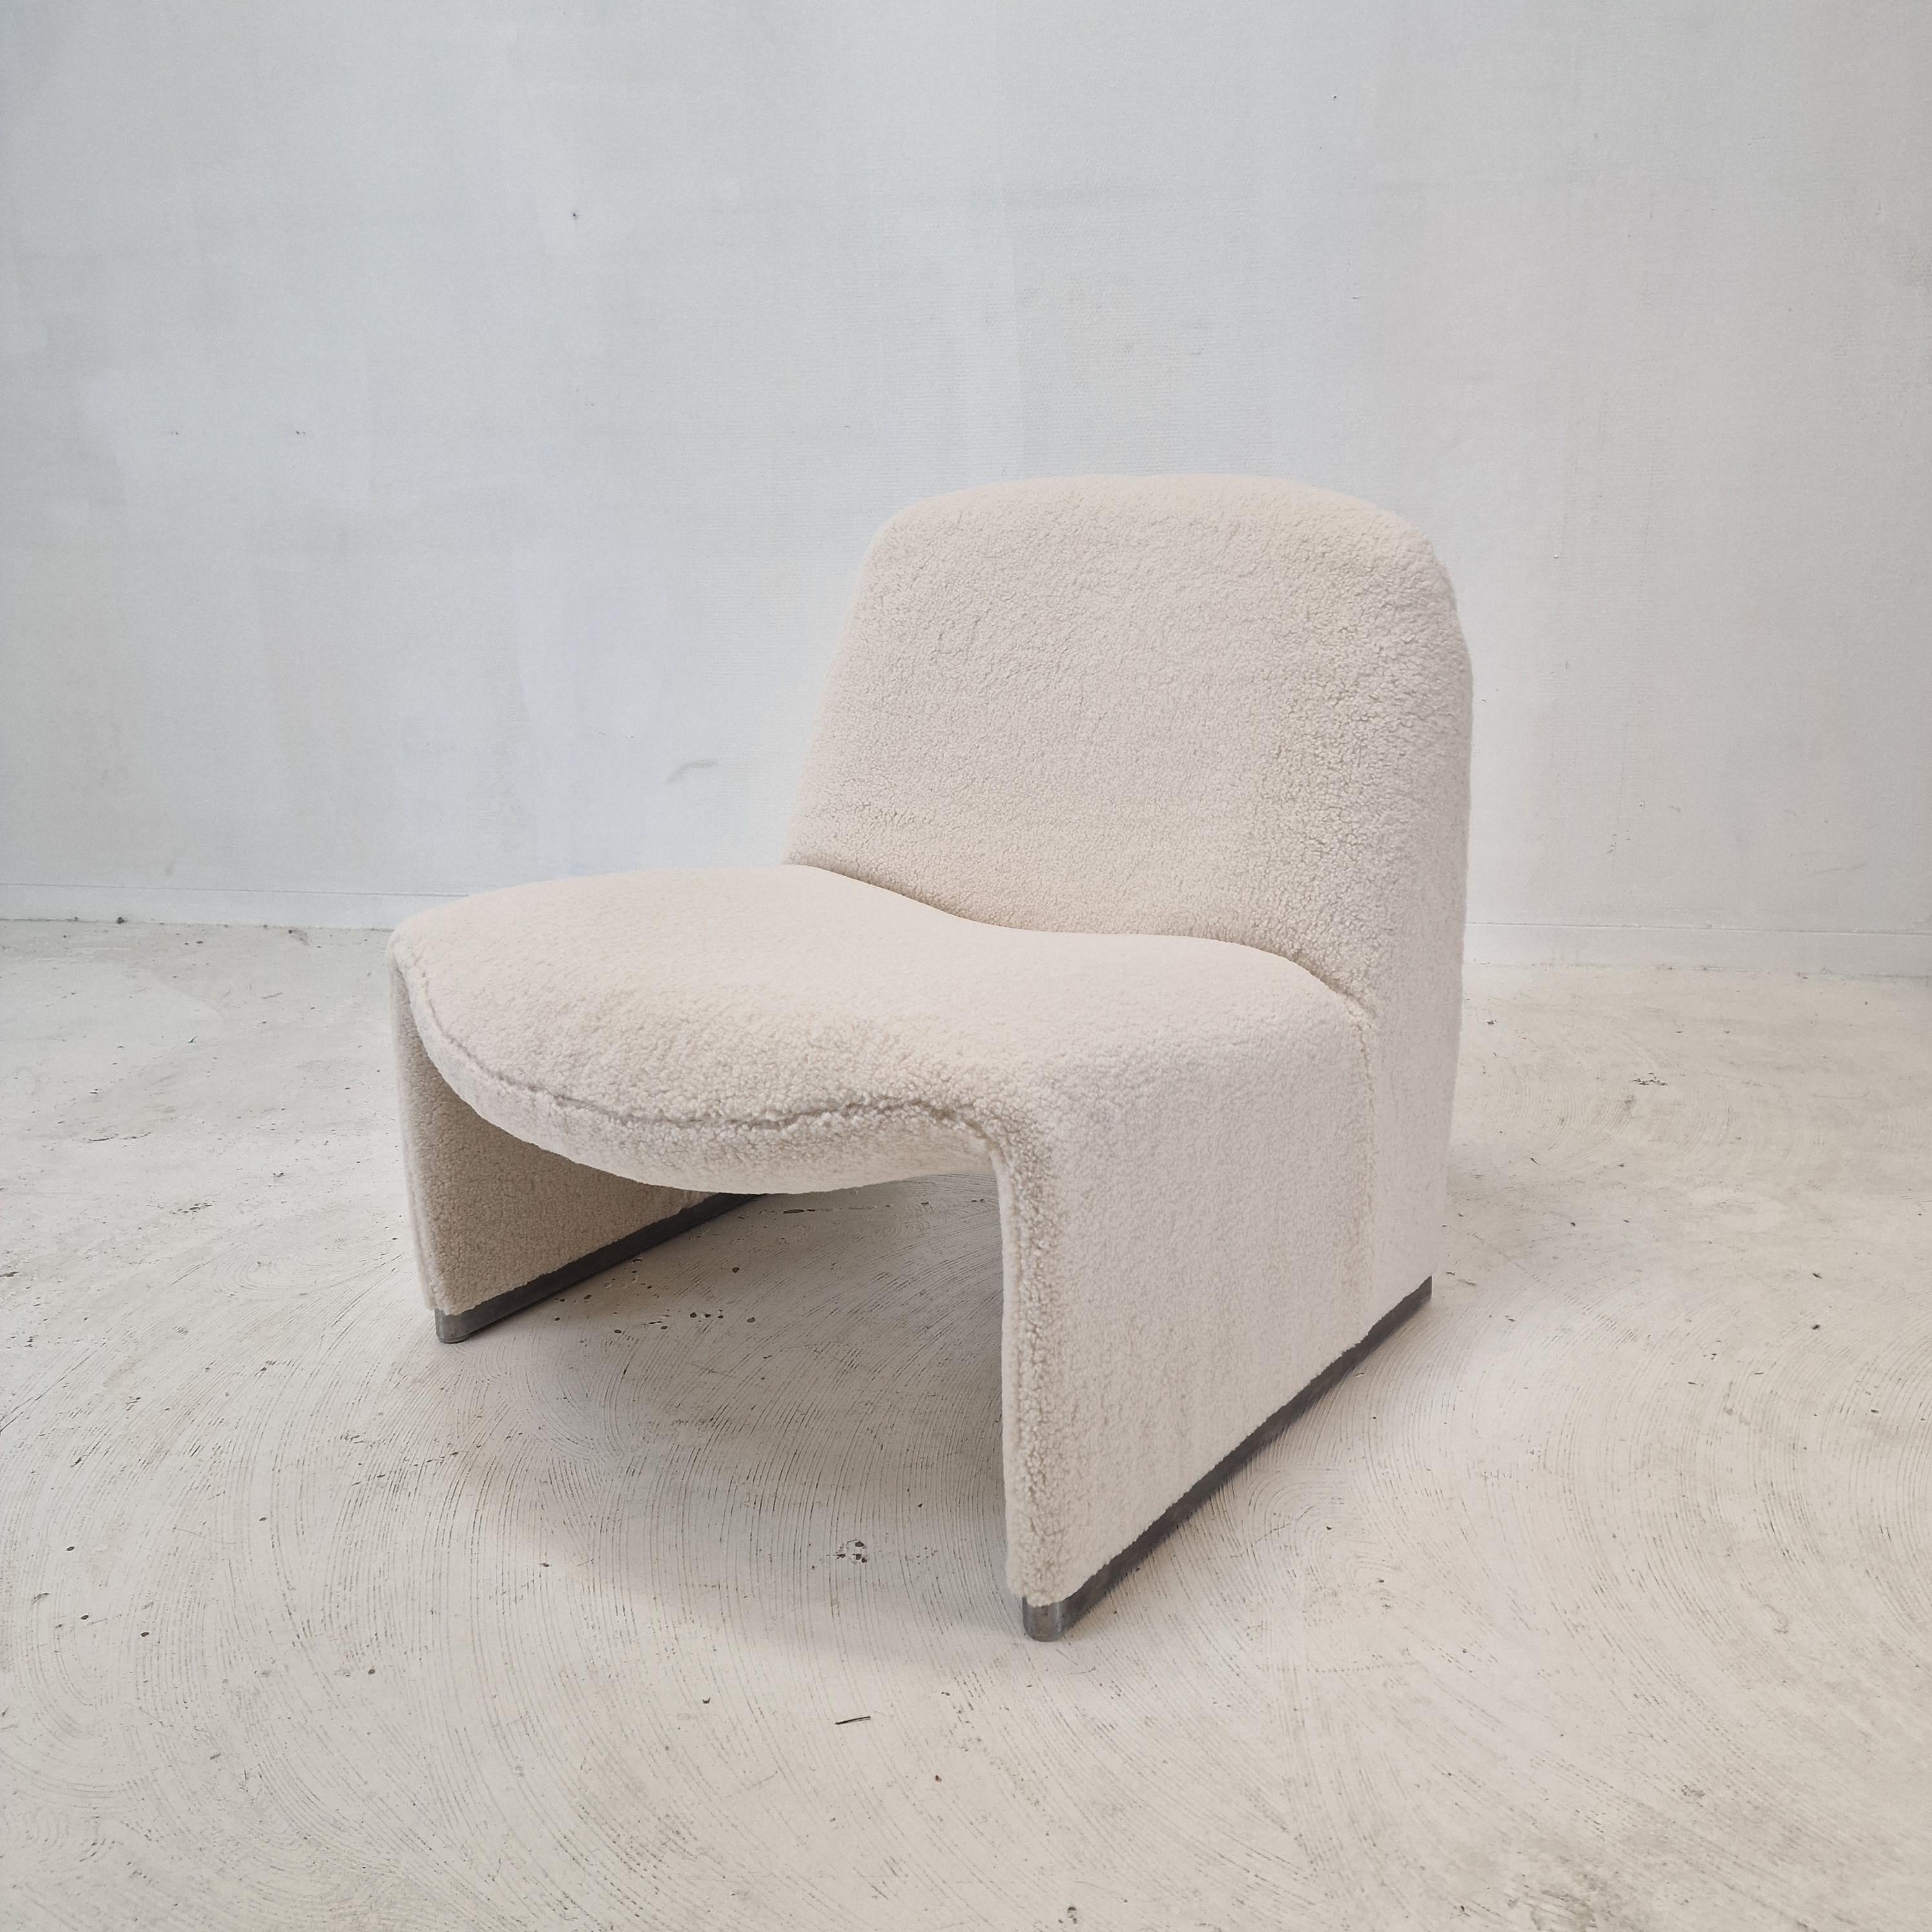 Satz von 2 schönen und bequemen Alky Stühlen. 
Entworfen von Giancarlo Piretti im Jahr 1969, hergestellt von Artifort. 

Sie sind gerade mit einem sehr weichen und kuscheligen Stoff neu bezogen worden, es fühlt sich an wie ein Schaf. 
Die Stühle